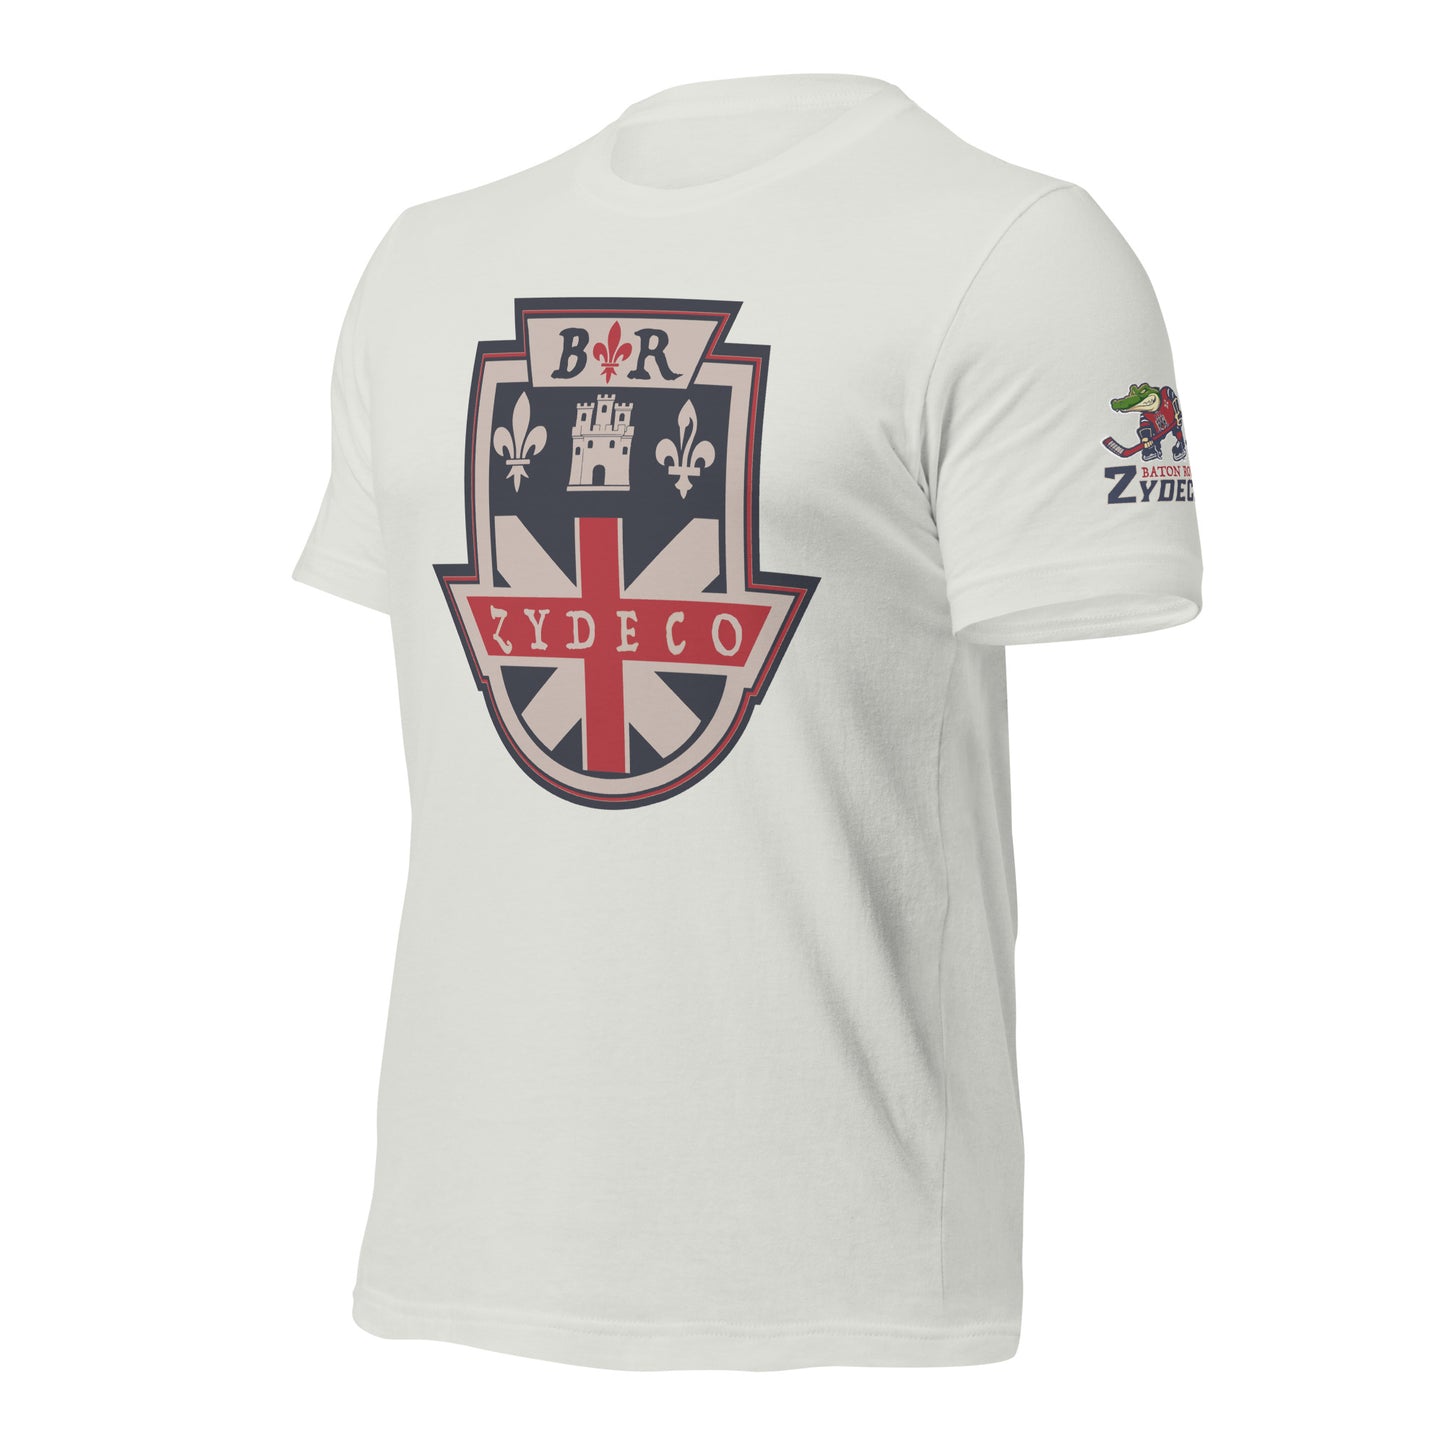 ZYDECO - BADGE & AL LOGO ON SLEEVE - Unisex t-shirt